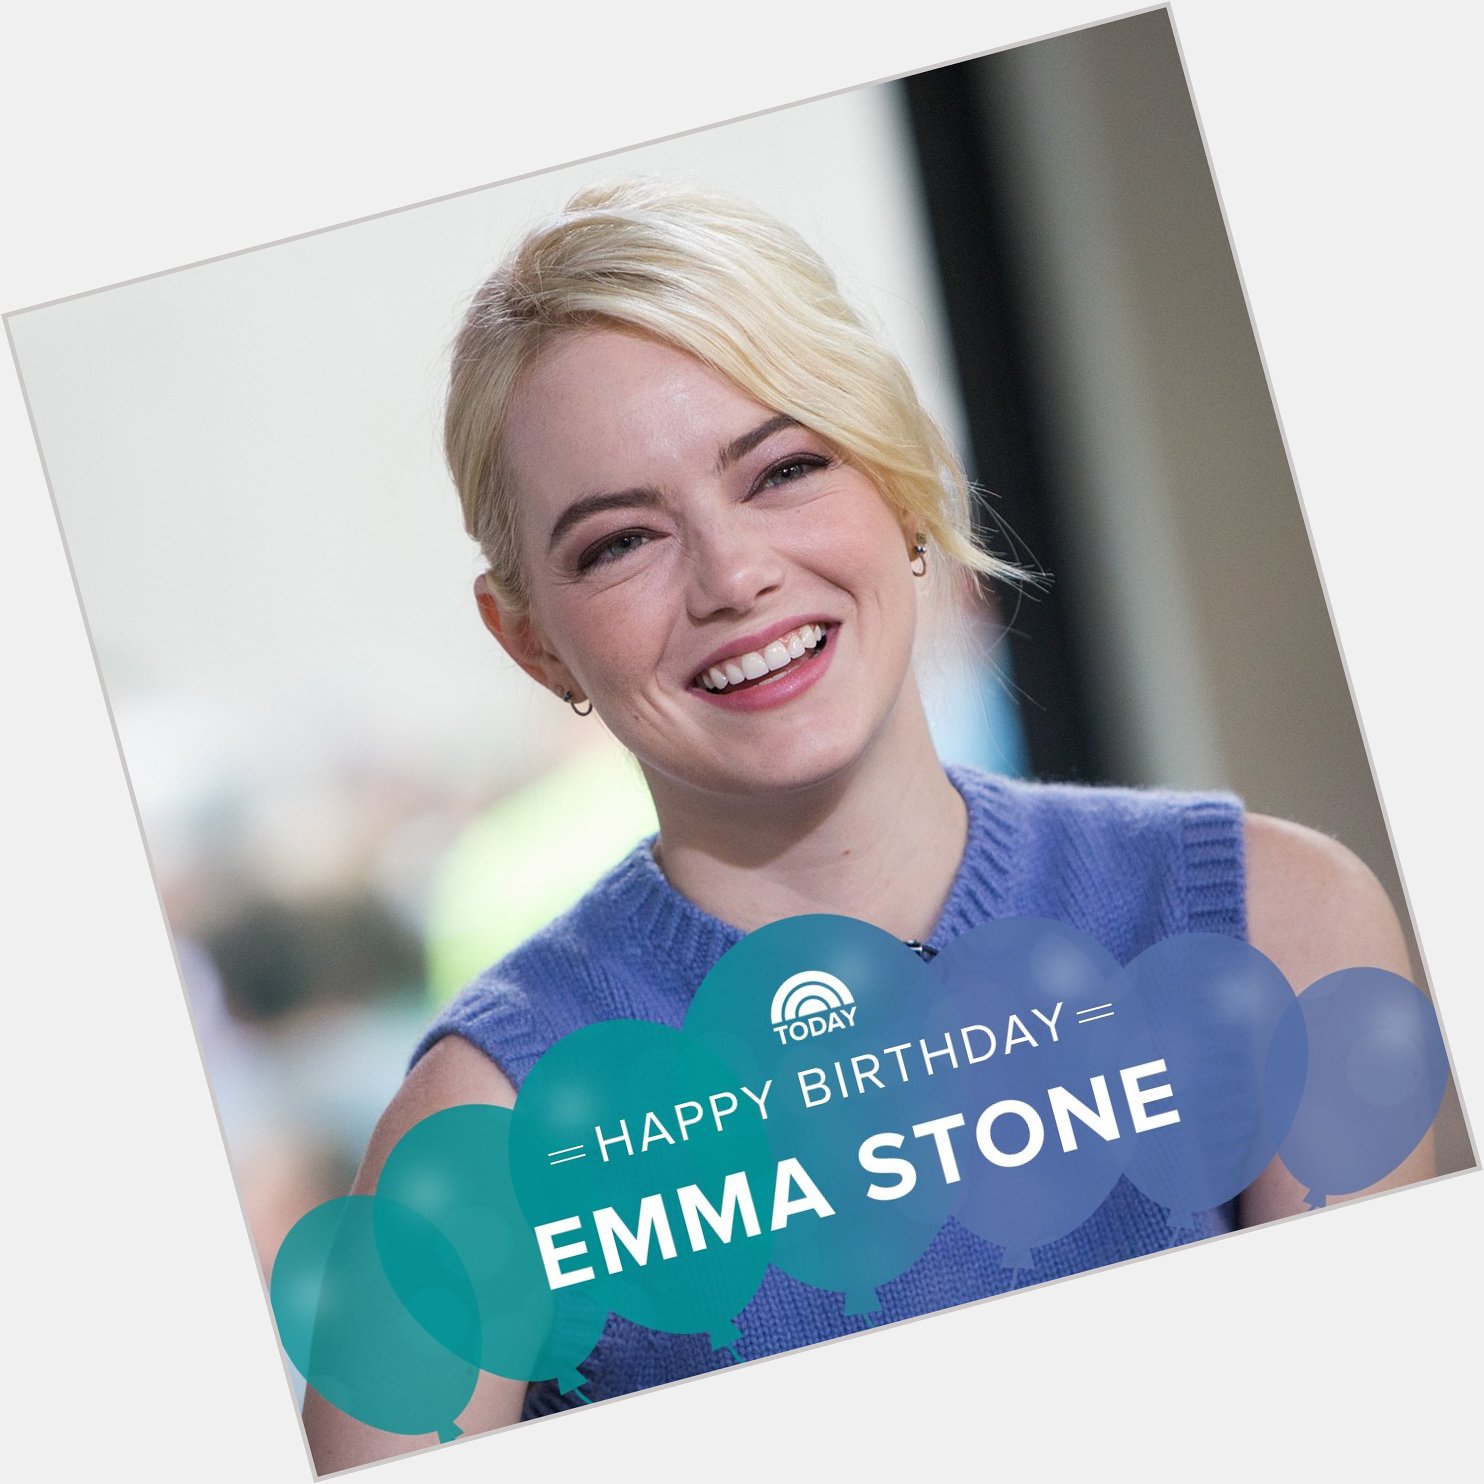 Happy birthday, Emma Stone! 